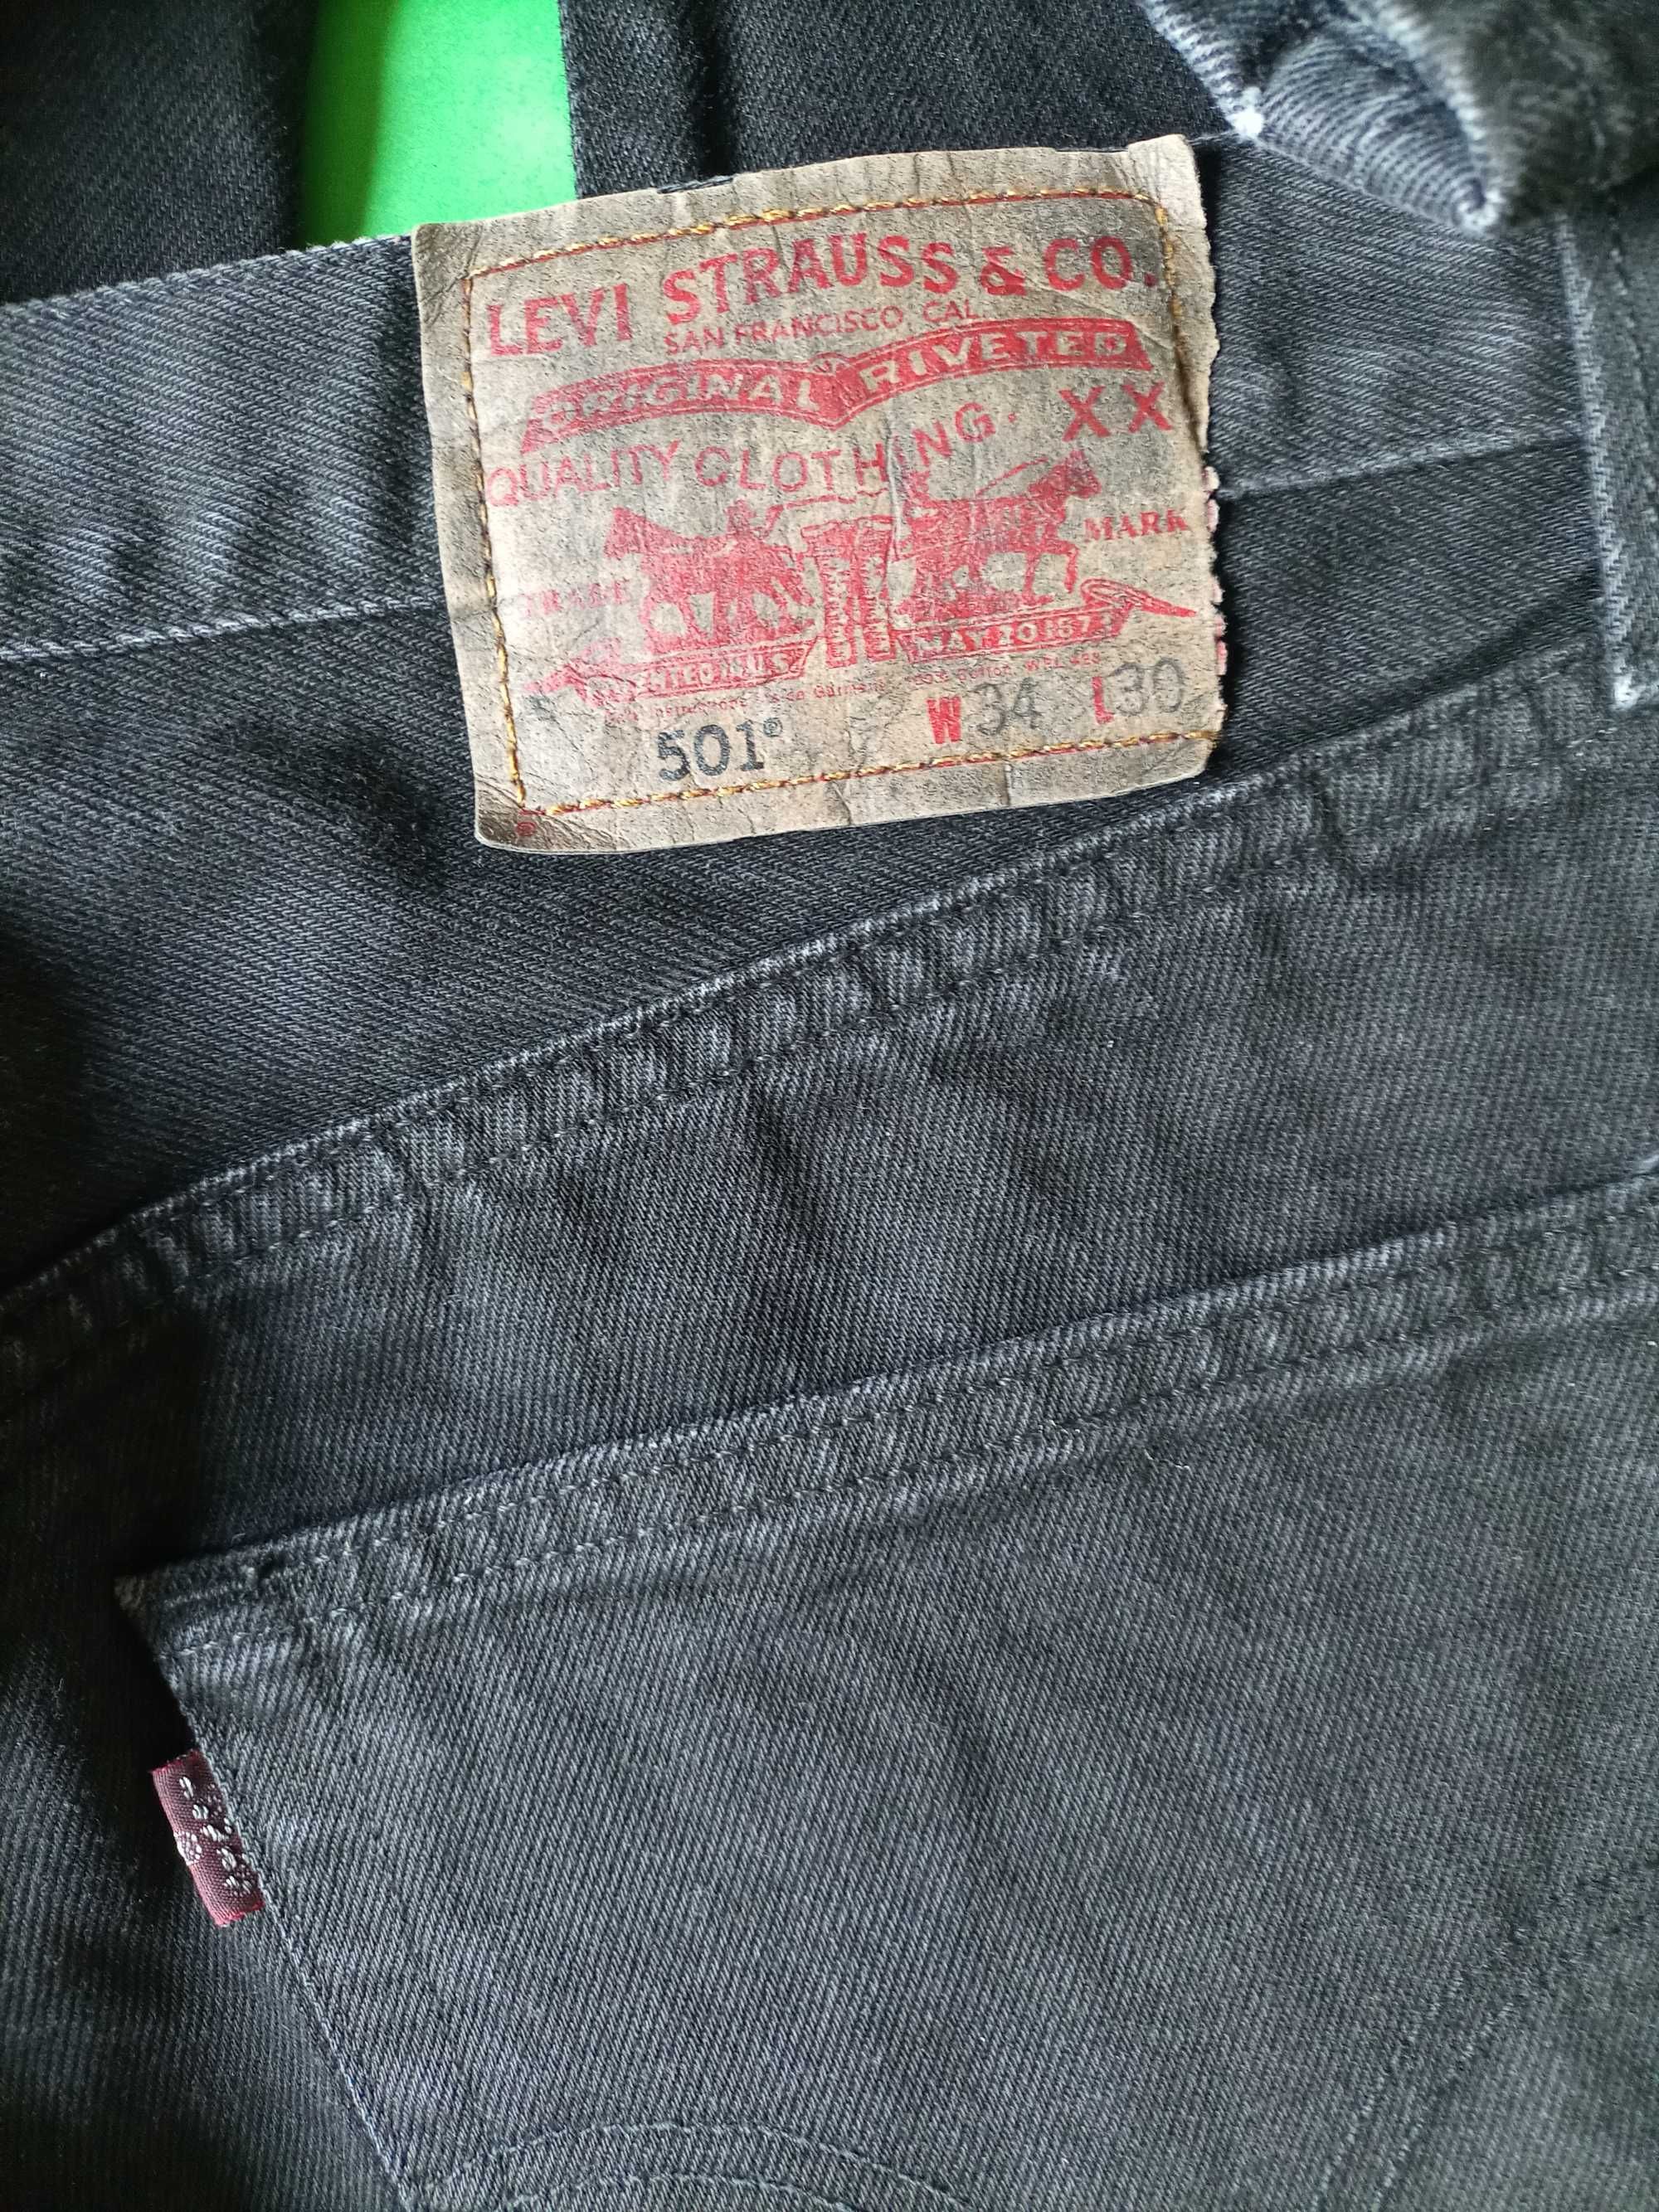 Levi Strauss 501 spodnie jeansowe W34 L30